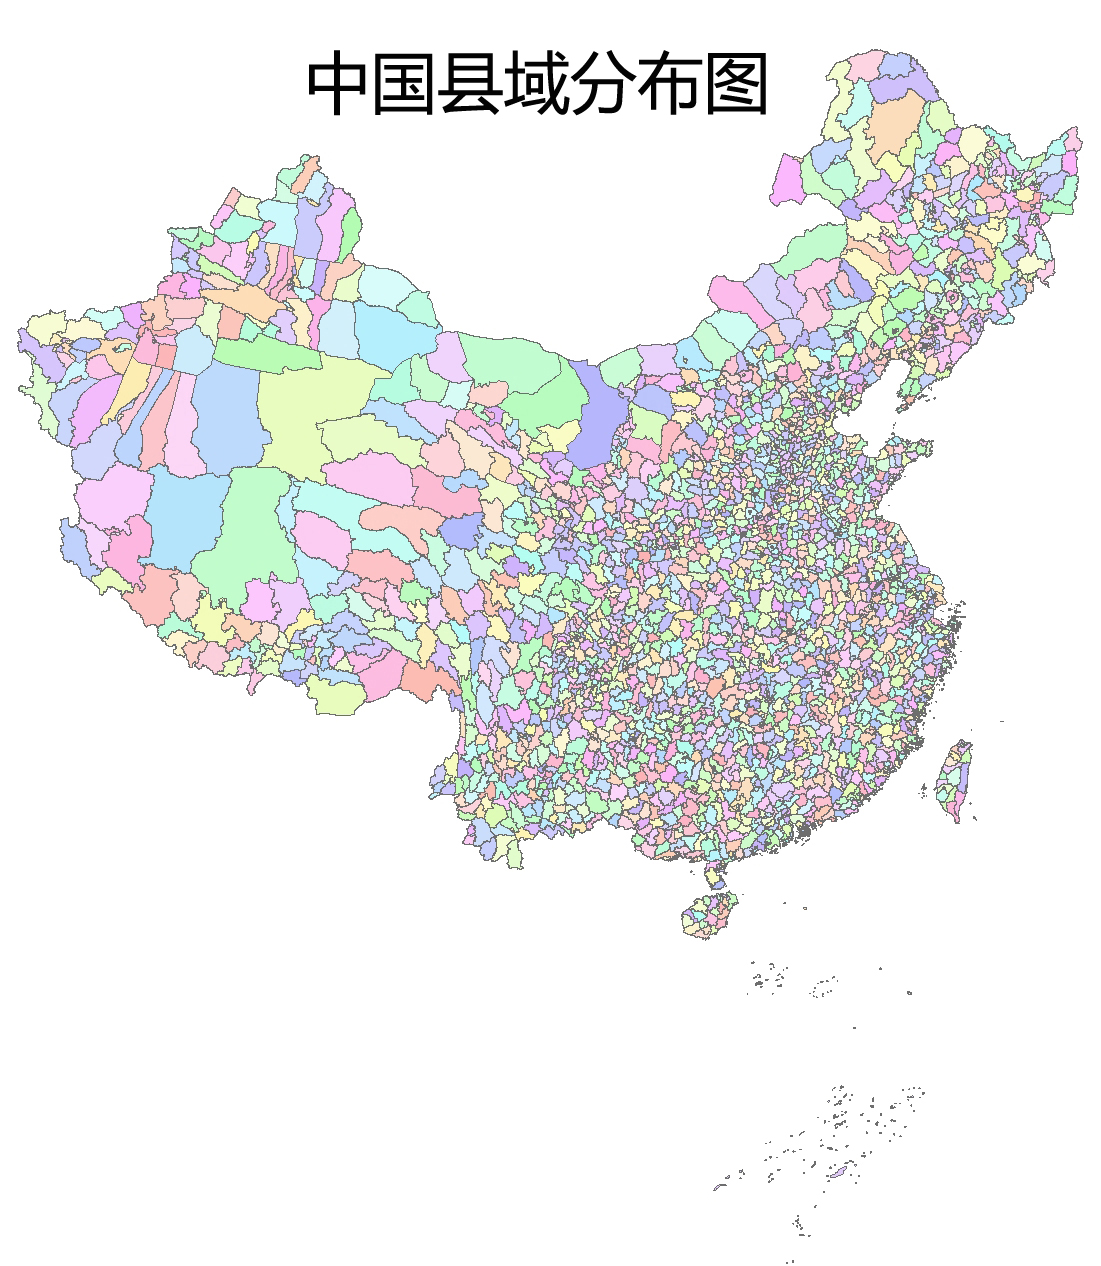 1995年中国县级行政边界数据